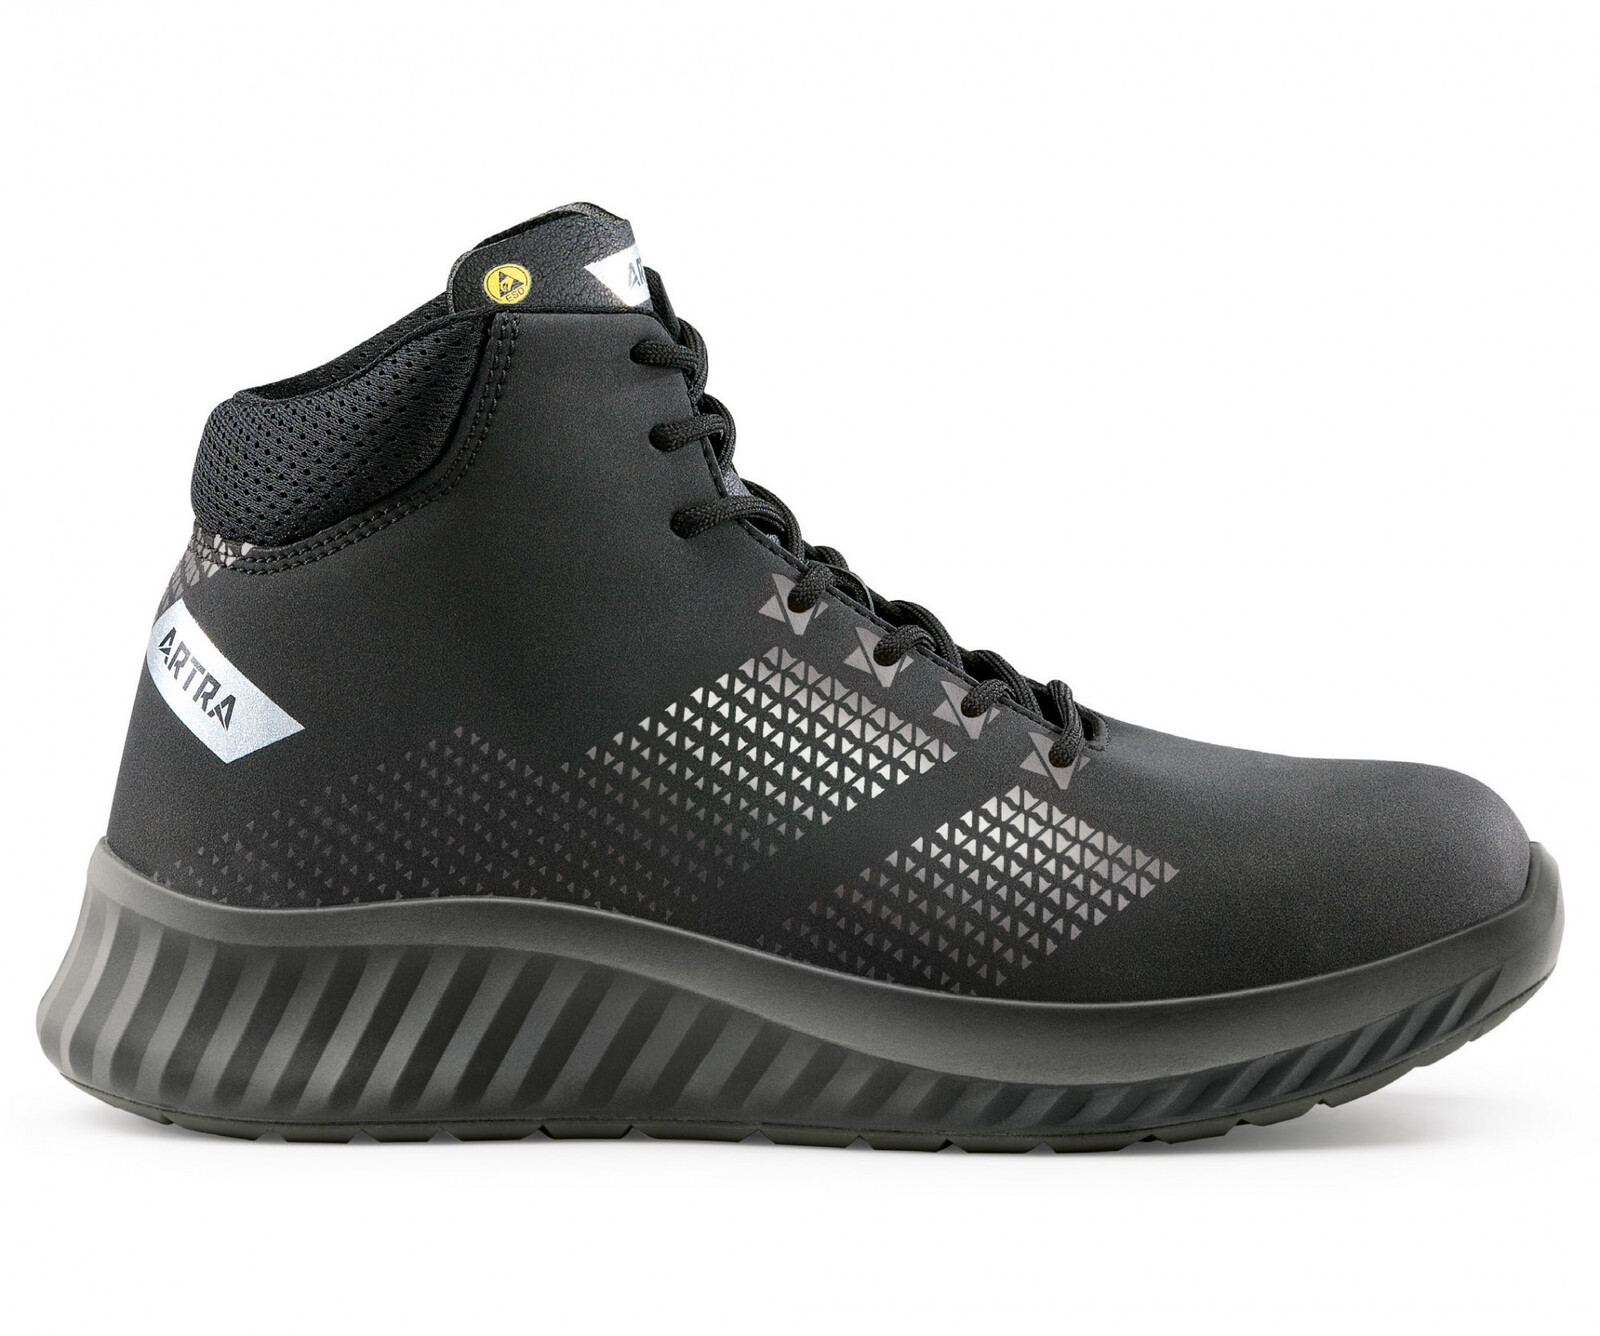 Bezpečnostná členková obuv Artra Aroserio 750 616560 S3 SRC ESD - veľkosť: 35, farba: čierna/sivá